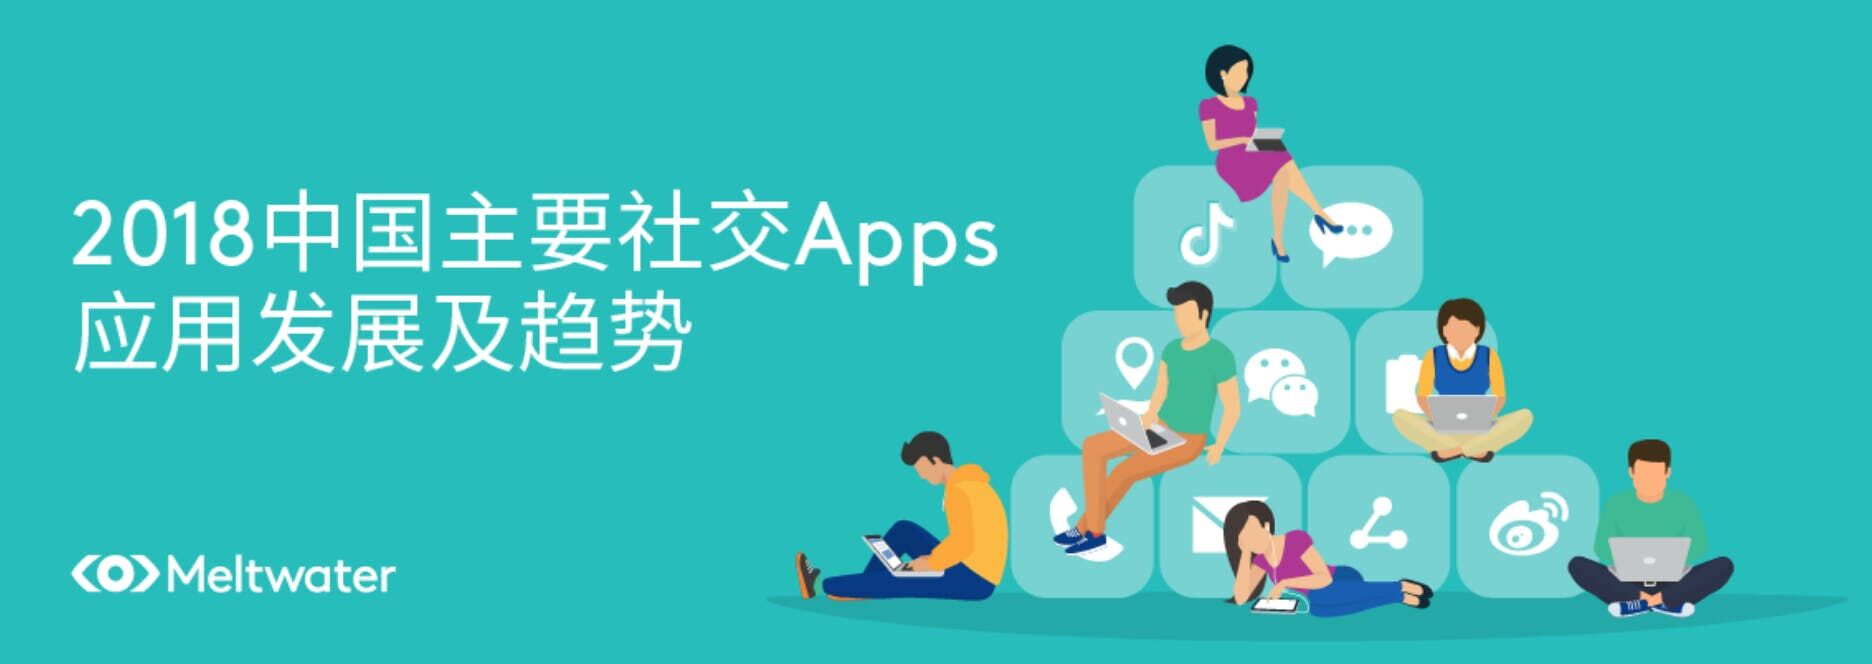 2018中国主要社交Apps应用发展及趋势